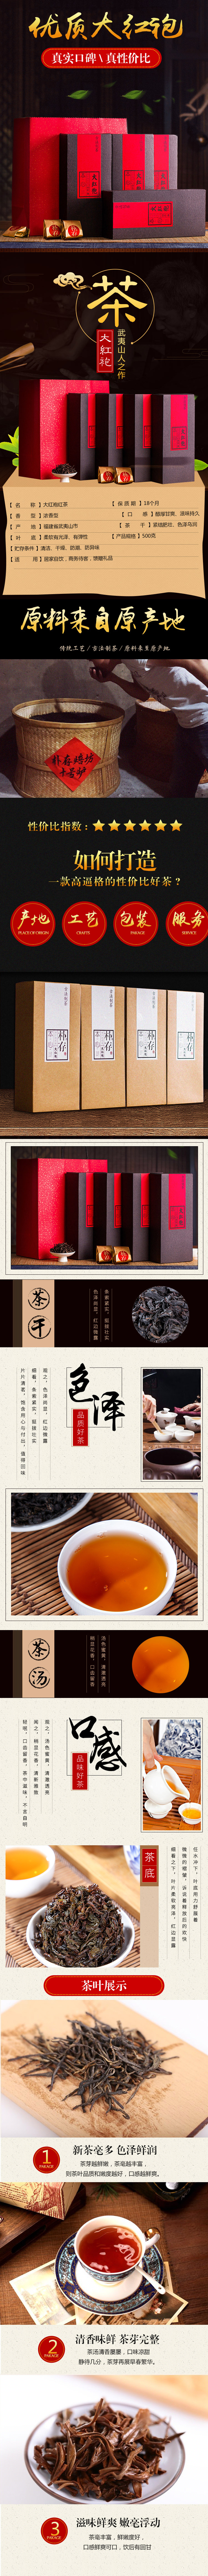 淘宝美工小左然中国风传统工艺古法炮制优质大红袍作品